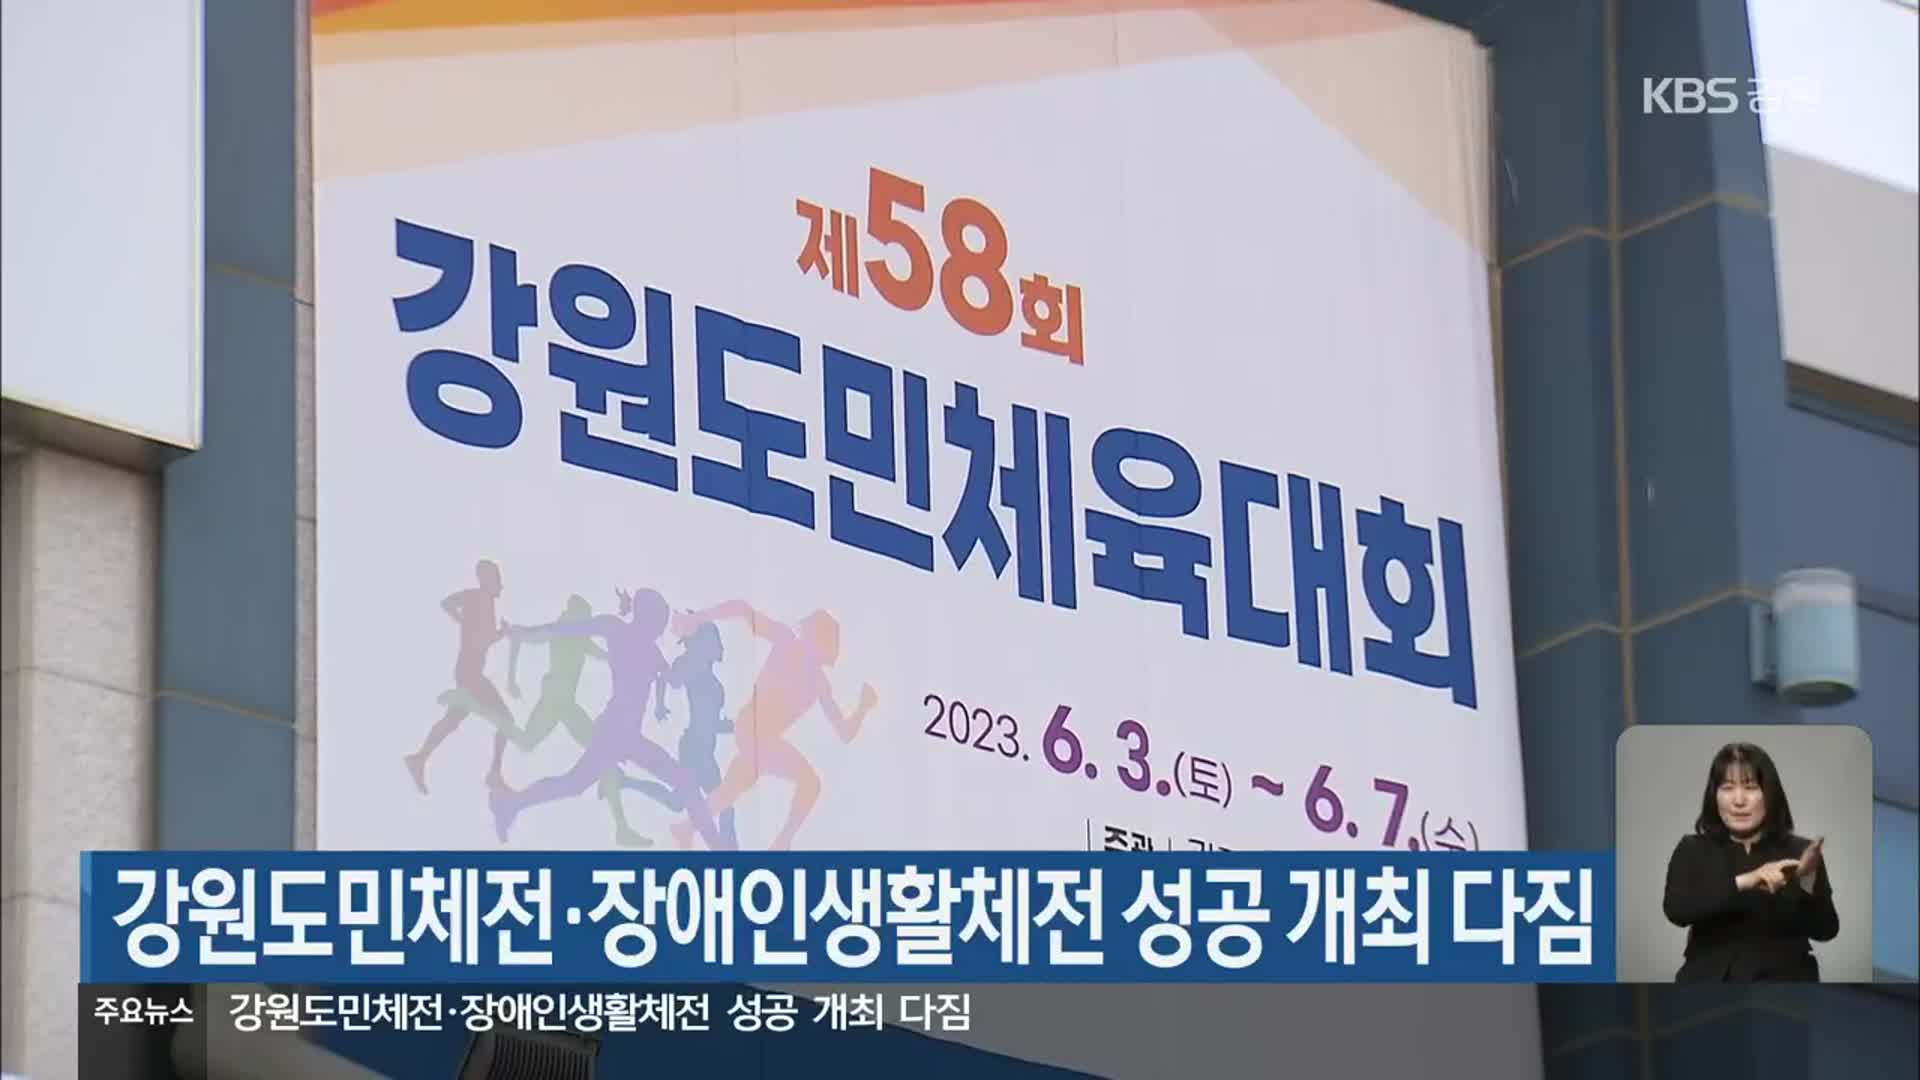 강원도민체전·장애인생활체전 성공 개최 다짐